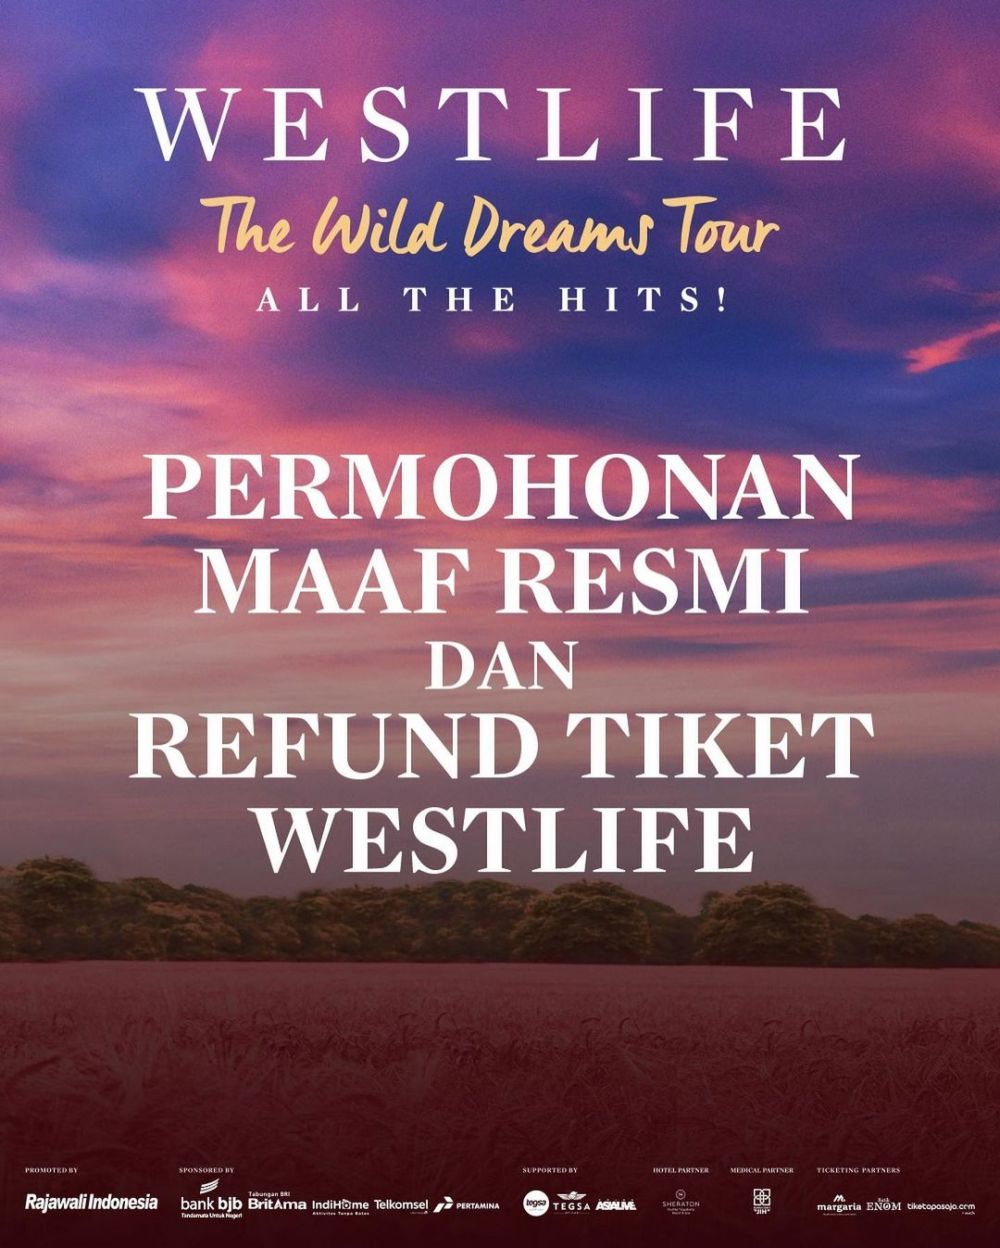 Konser Westlife di Prambanan gelap-gelapan, penonton bisa refund tiket